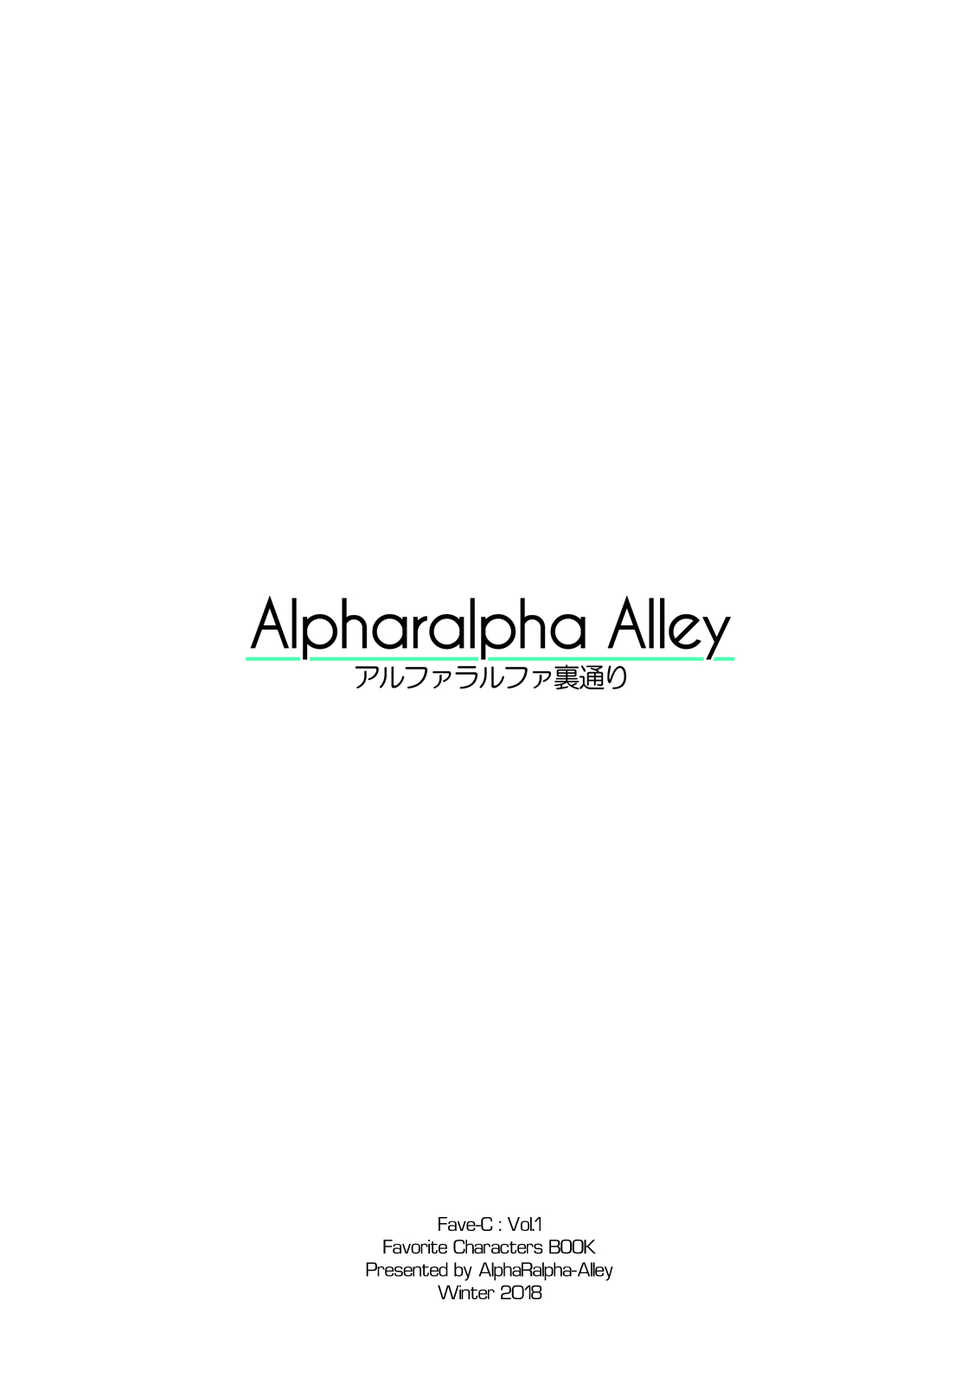 [AlphaRalpha Alley] Fave-C Vol. 1 "Shibari Wasure" (Various) - Page 17